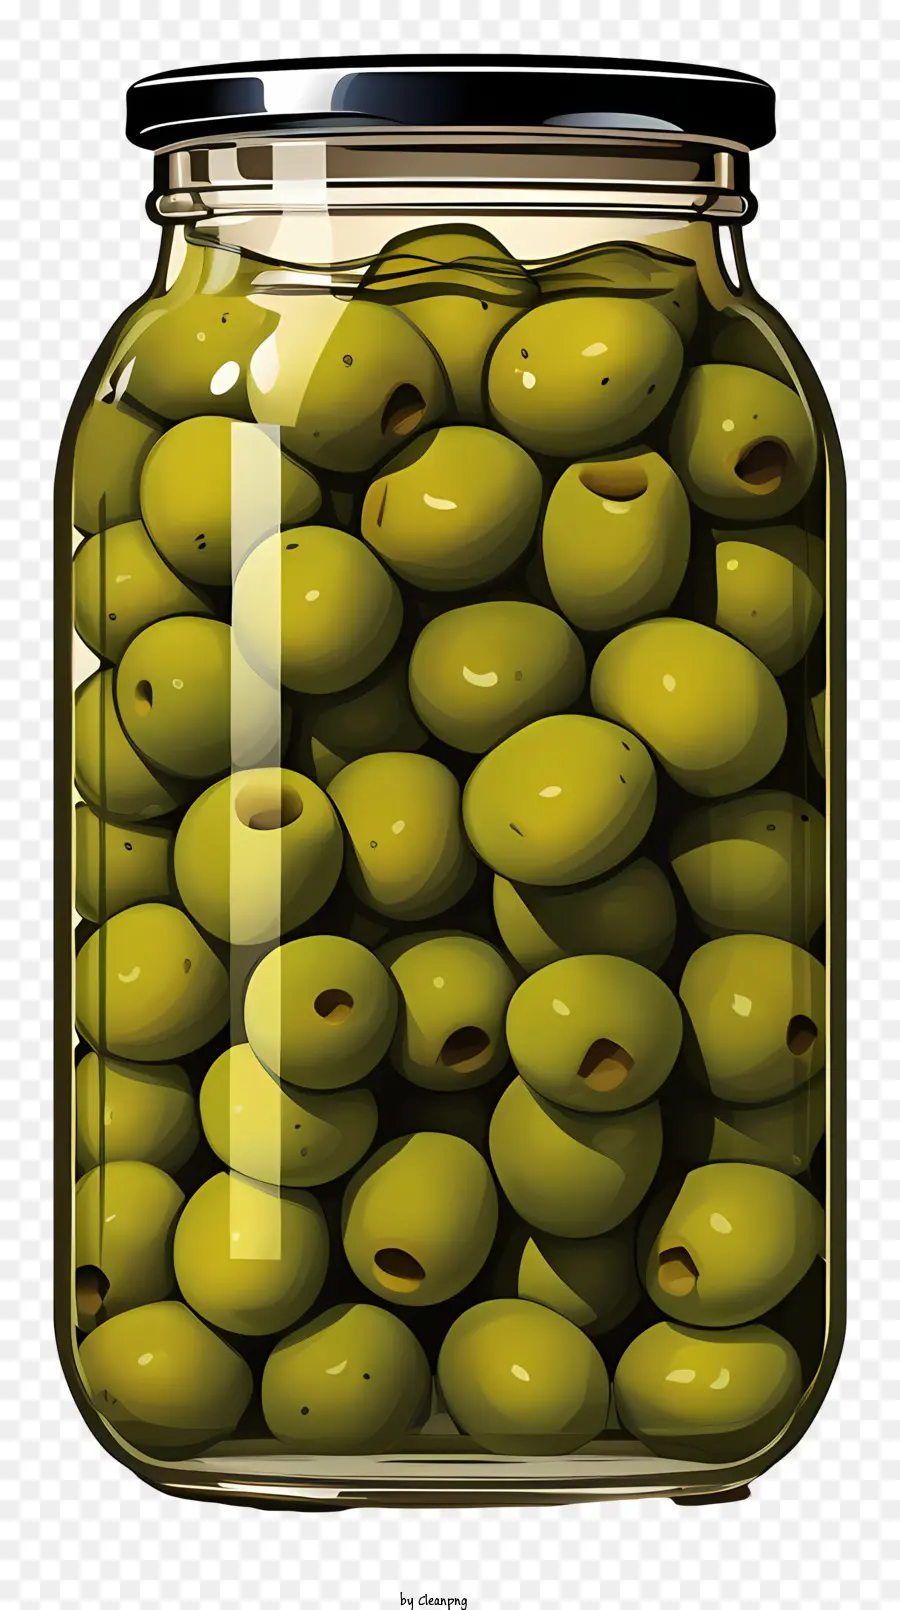 olive verdi disegnate a mano in barattolo verde olive in vetro barattole ammucchiato di olive scuro - Immagine ad alta risoluzione di olive verdi in barattolo